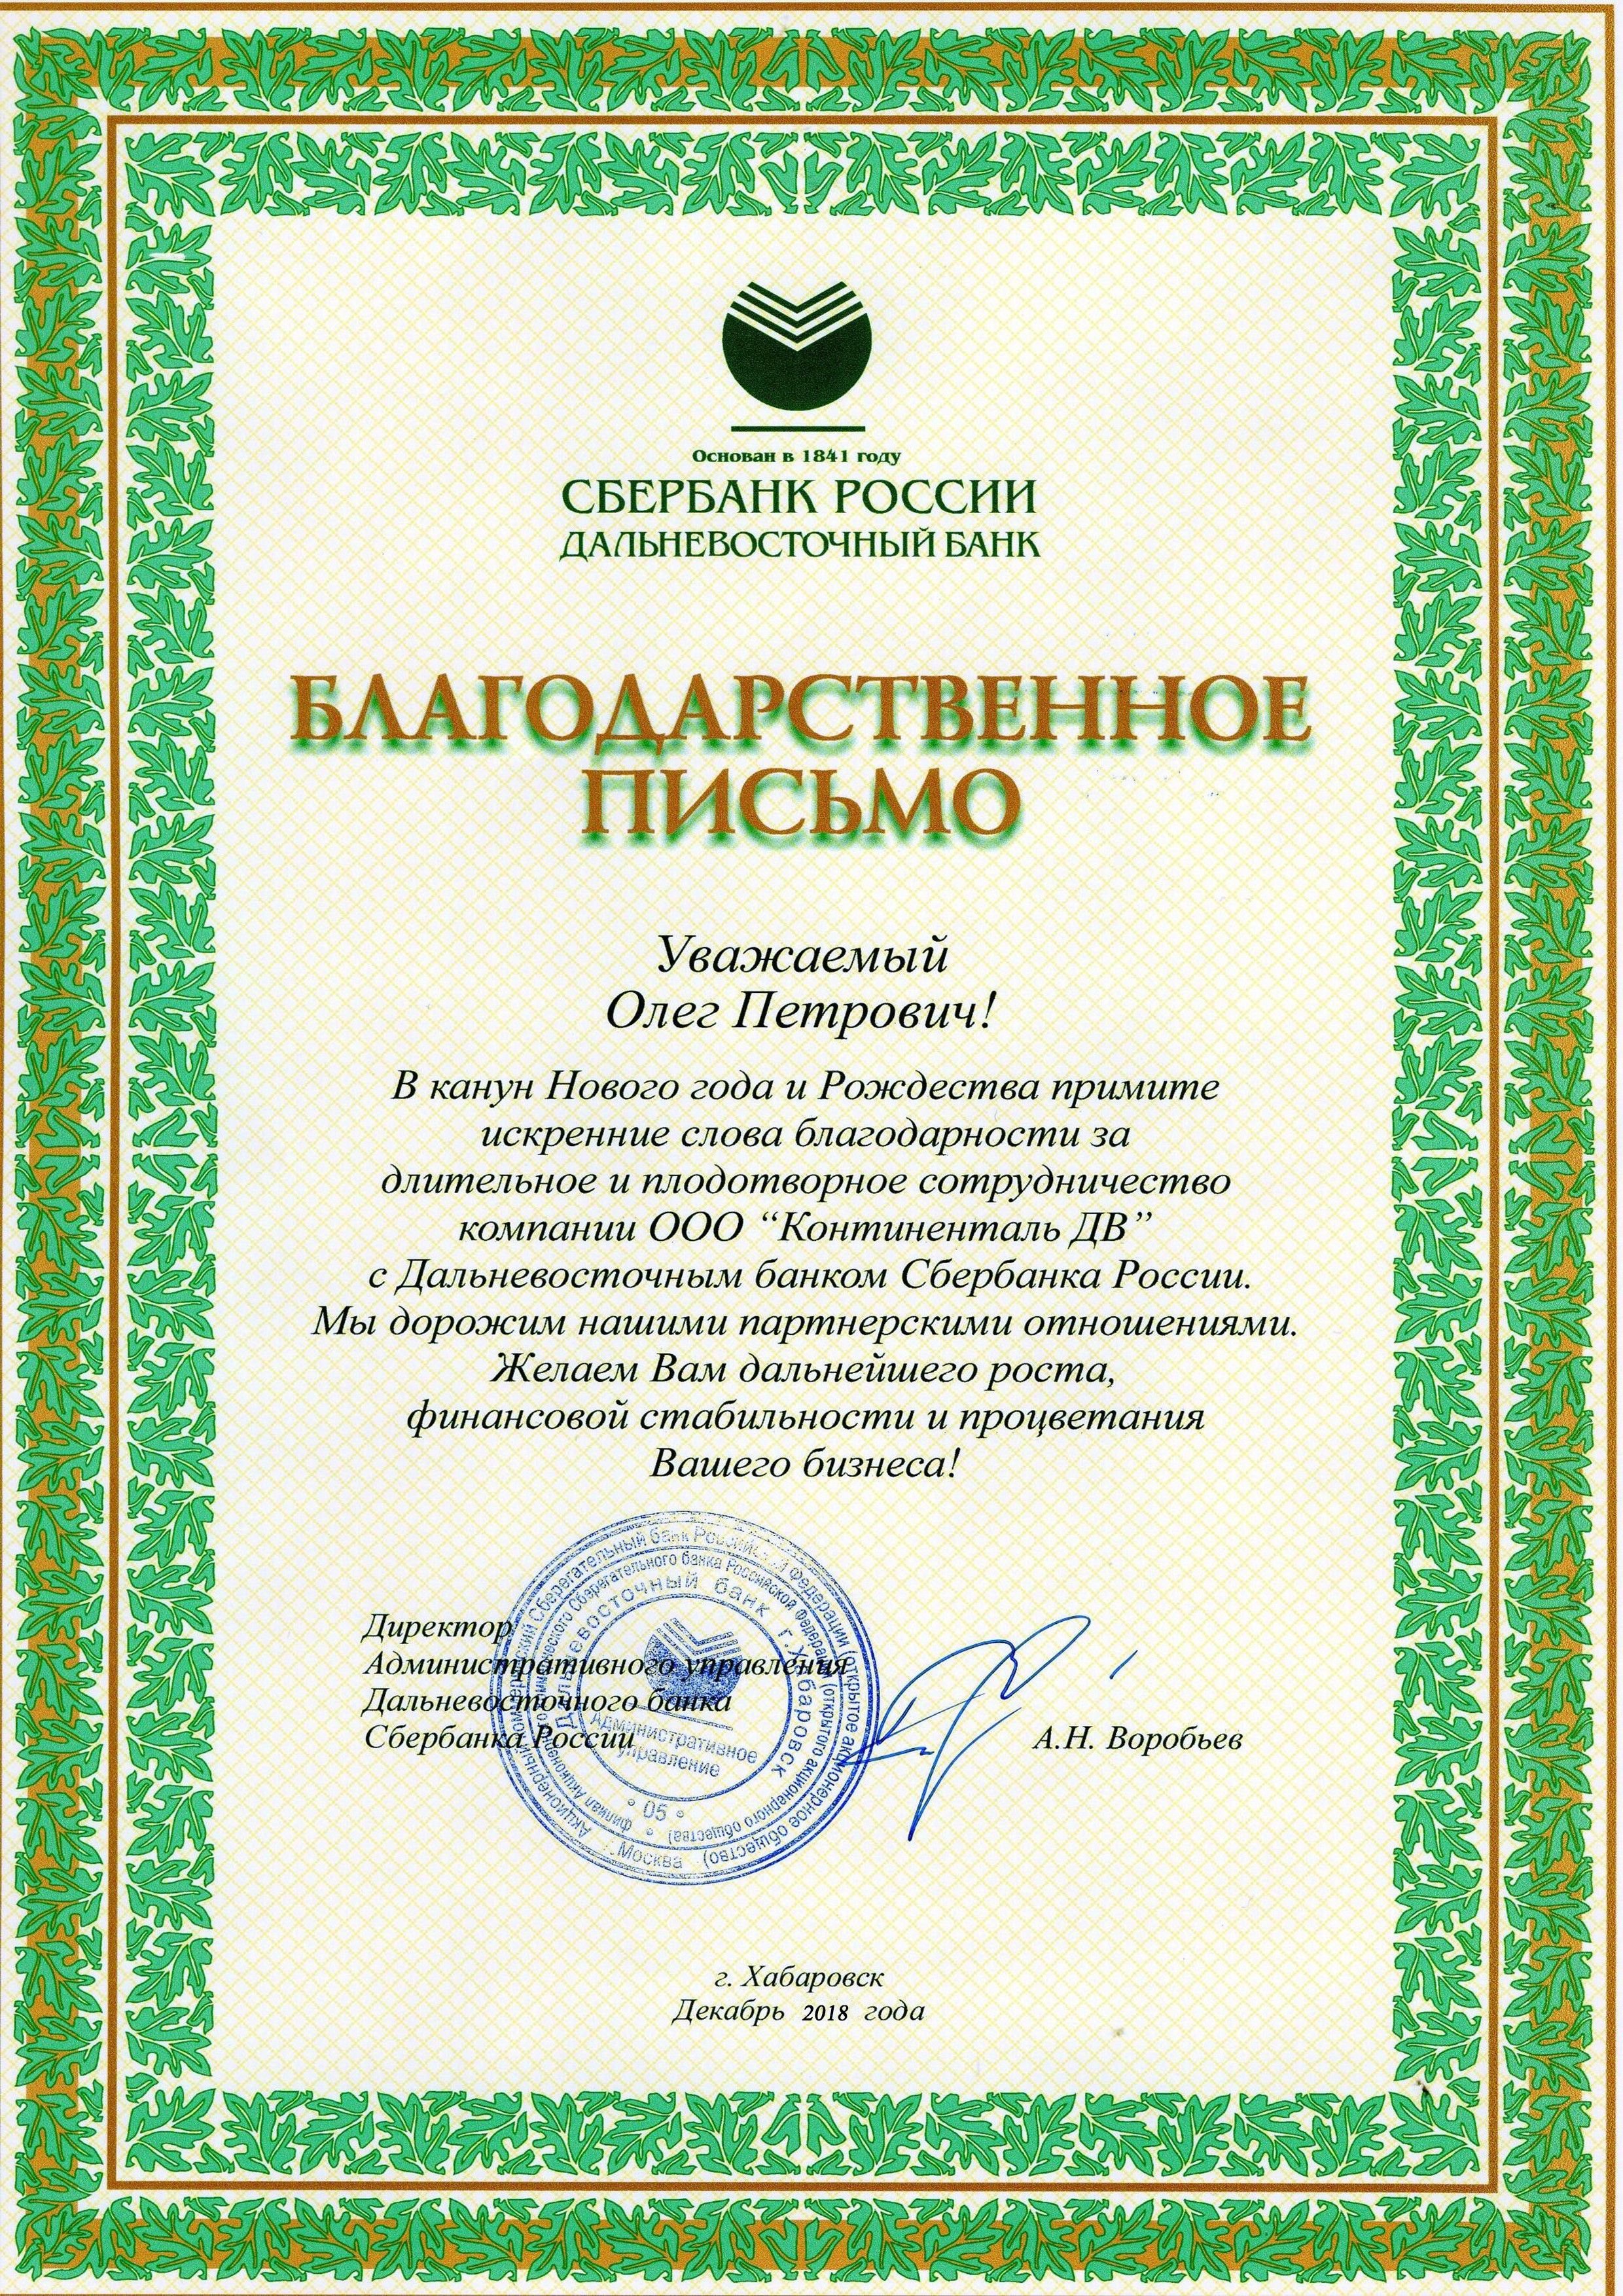 Дальневосточный банк Сбербанка России благодарит за длительное и плодотворное сотрудничество